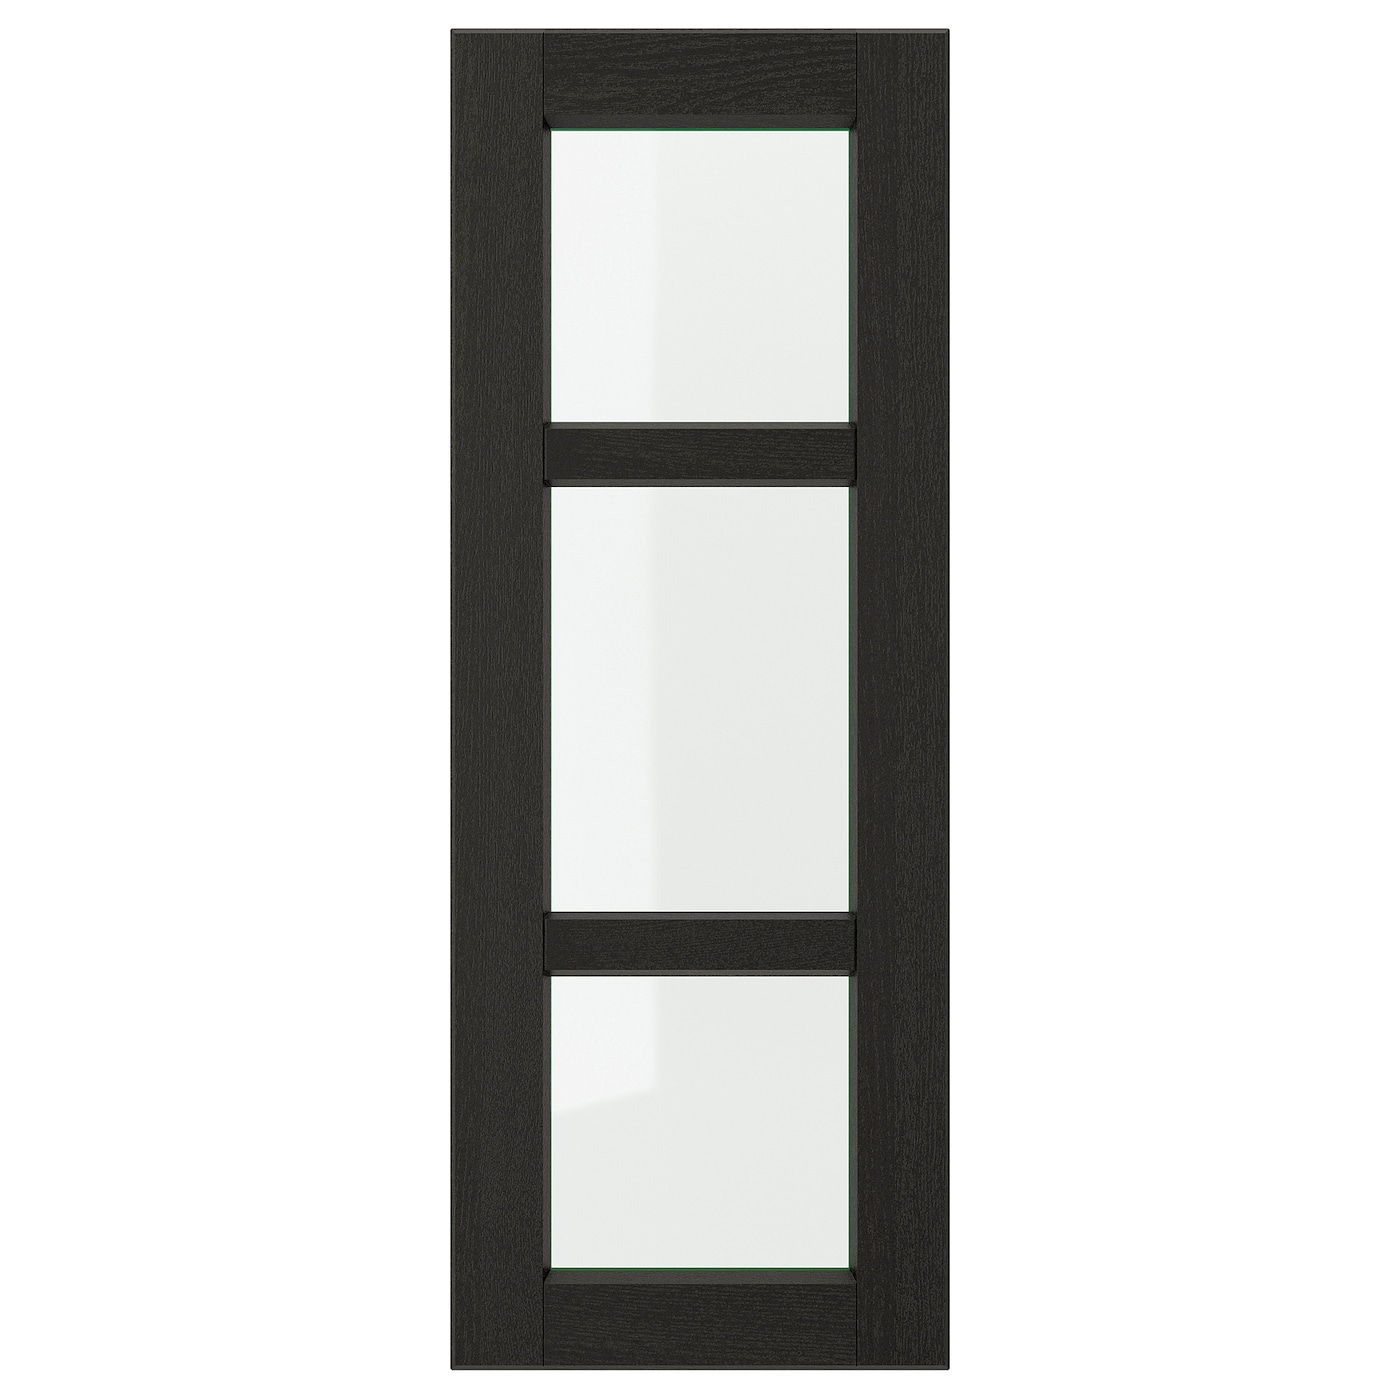 Дверца со стеклом - IKEA LERHYTTAN, 80х30 см, черный, ЛЕРХЮТТАН ИКЕА